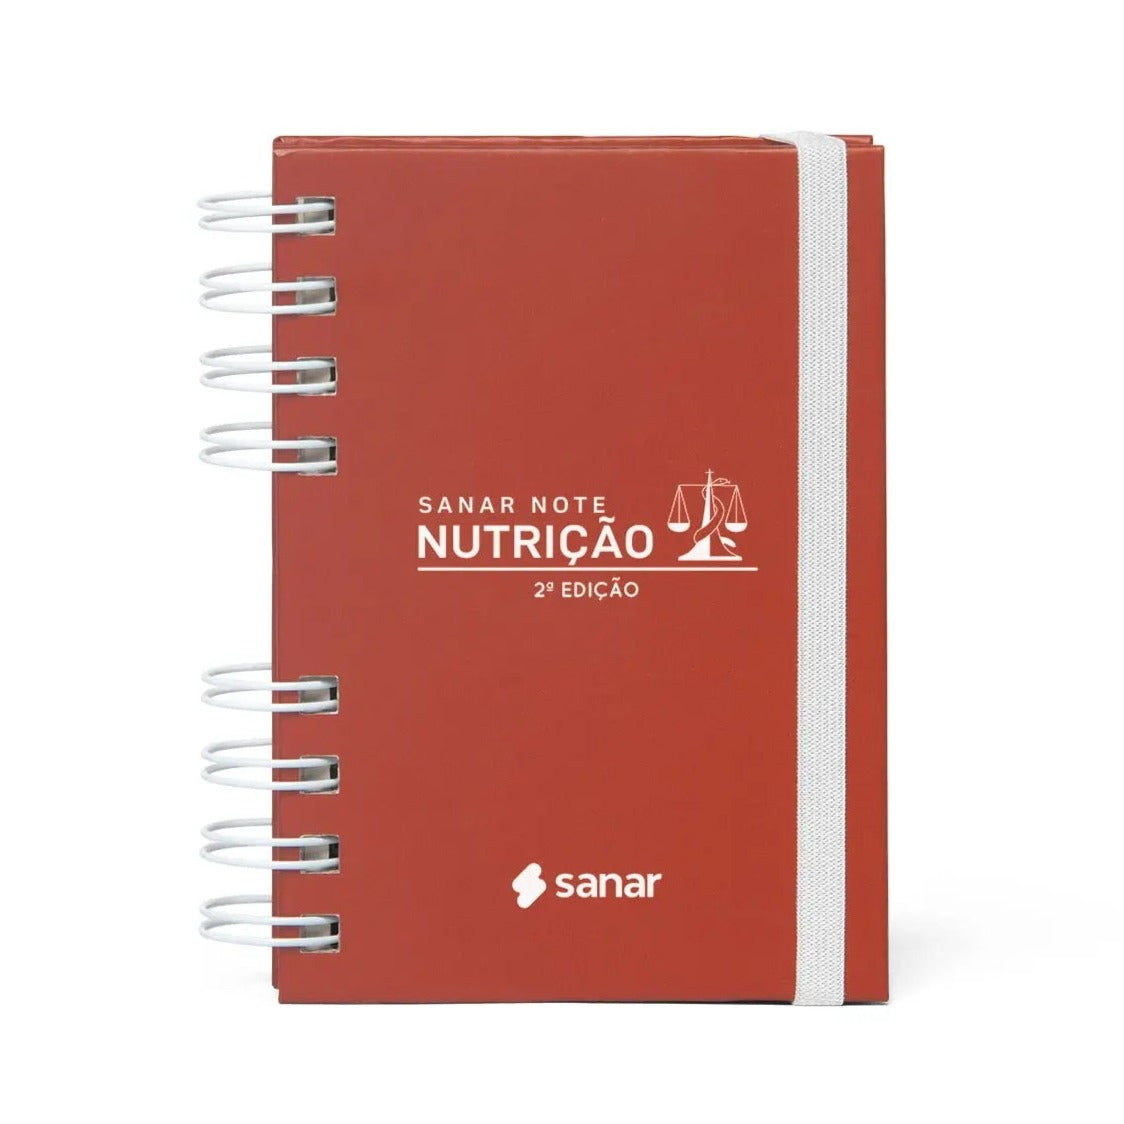 Sanar Note Nutrição 2ª Edição - Livro Técnico Sanar Saúde